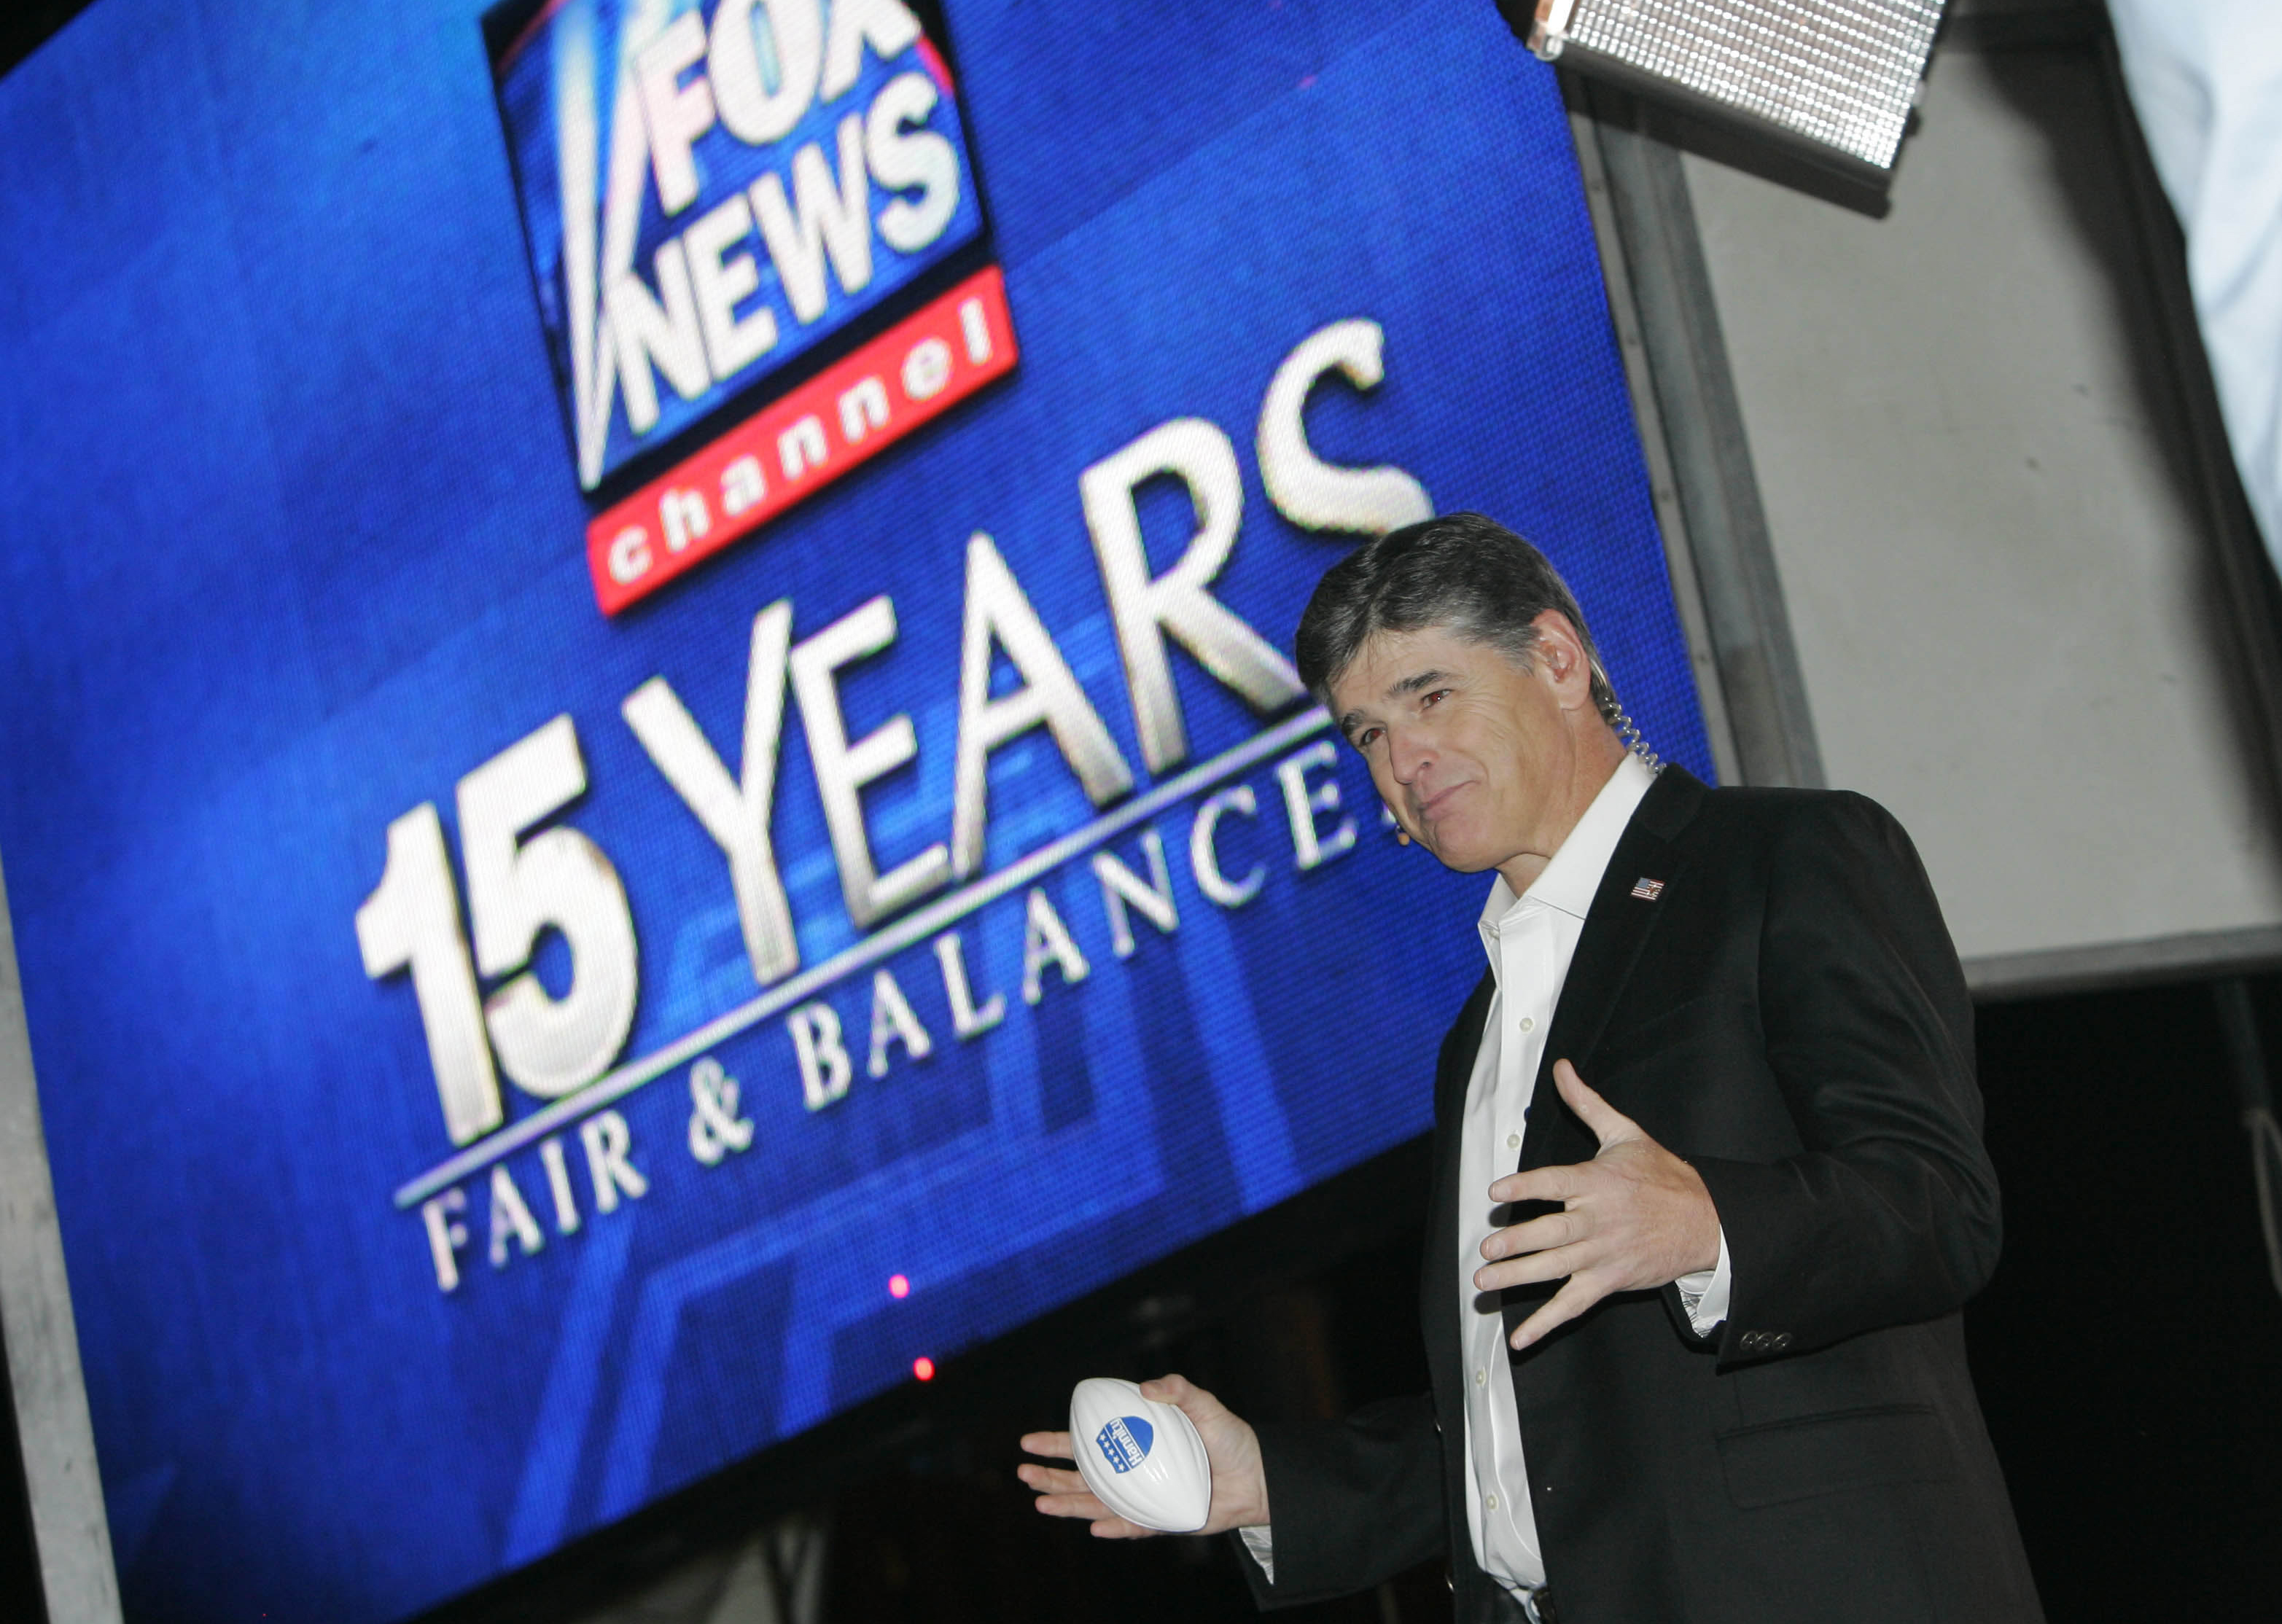 Programledaren Sean Hannity är en av de som hårdast kritiseras på Fox News, kanalen med "Fair &amp; balanced" som slogan.